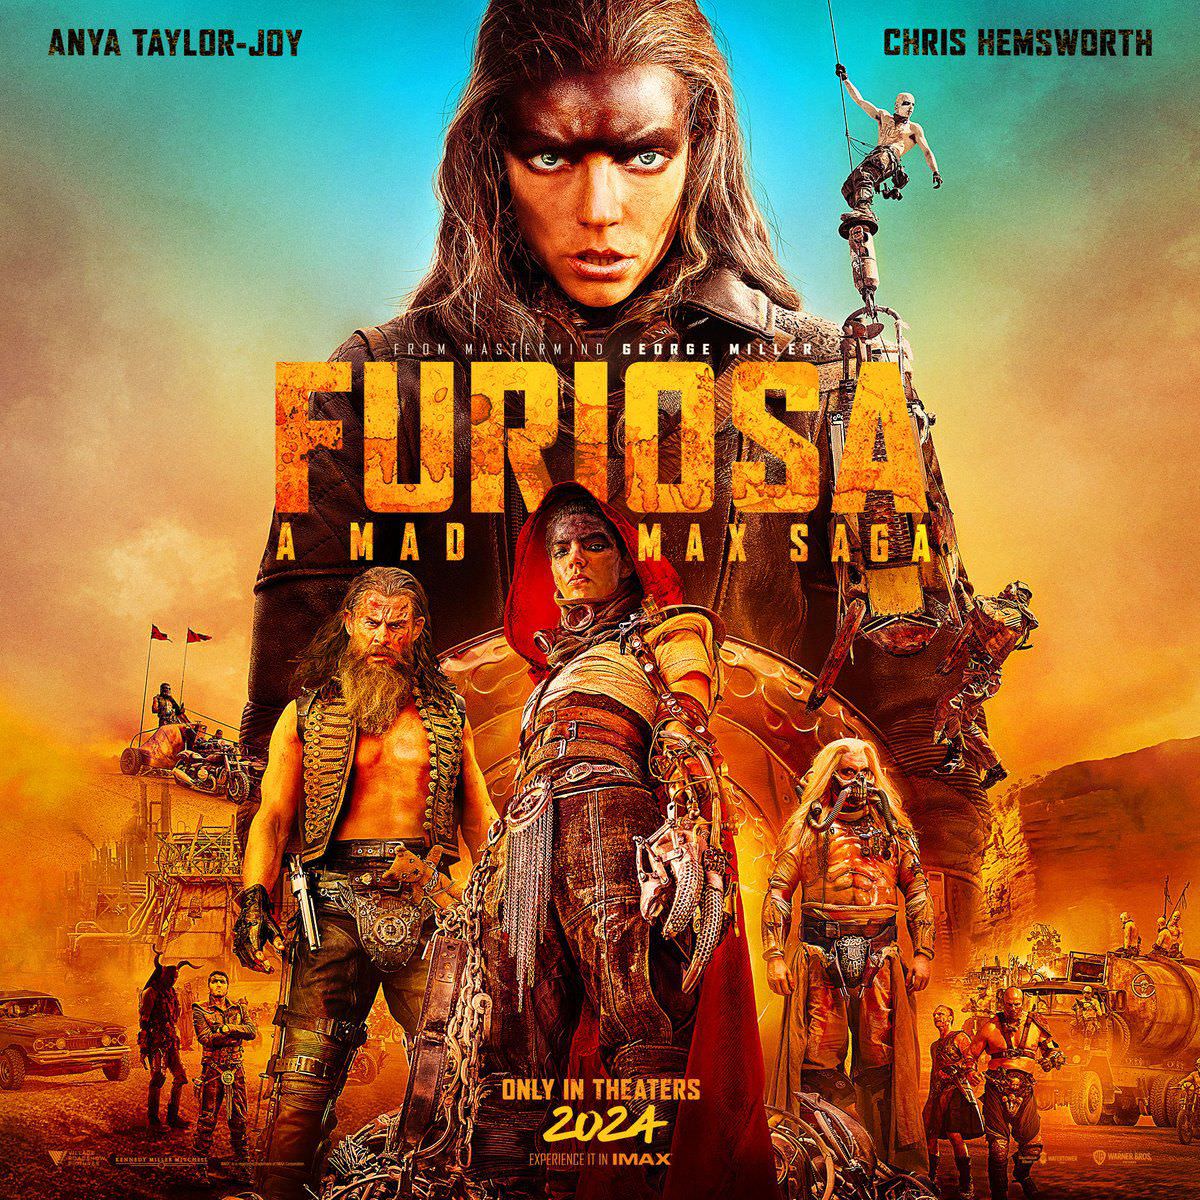 پوستر جدید و رسمی فیلم Furiosa: A Mad Max Saga